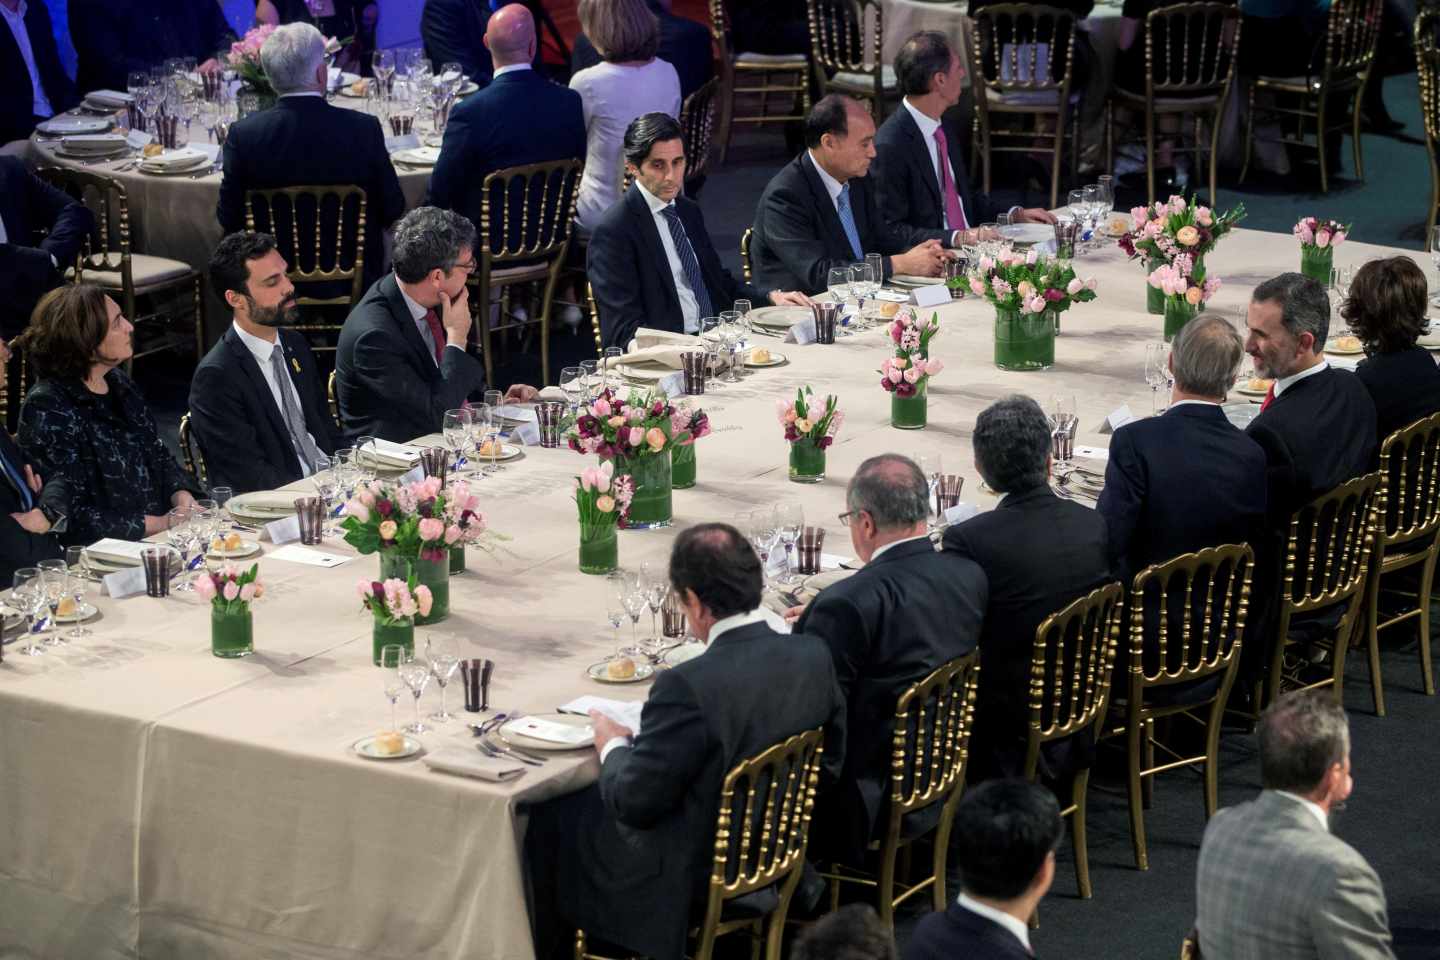 Ada Colau, Roger Torrent, el ministro Álvaro Nadal, Enric Millo y el Rey Felipe VI han compartido mesa en la cena del Mobile.